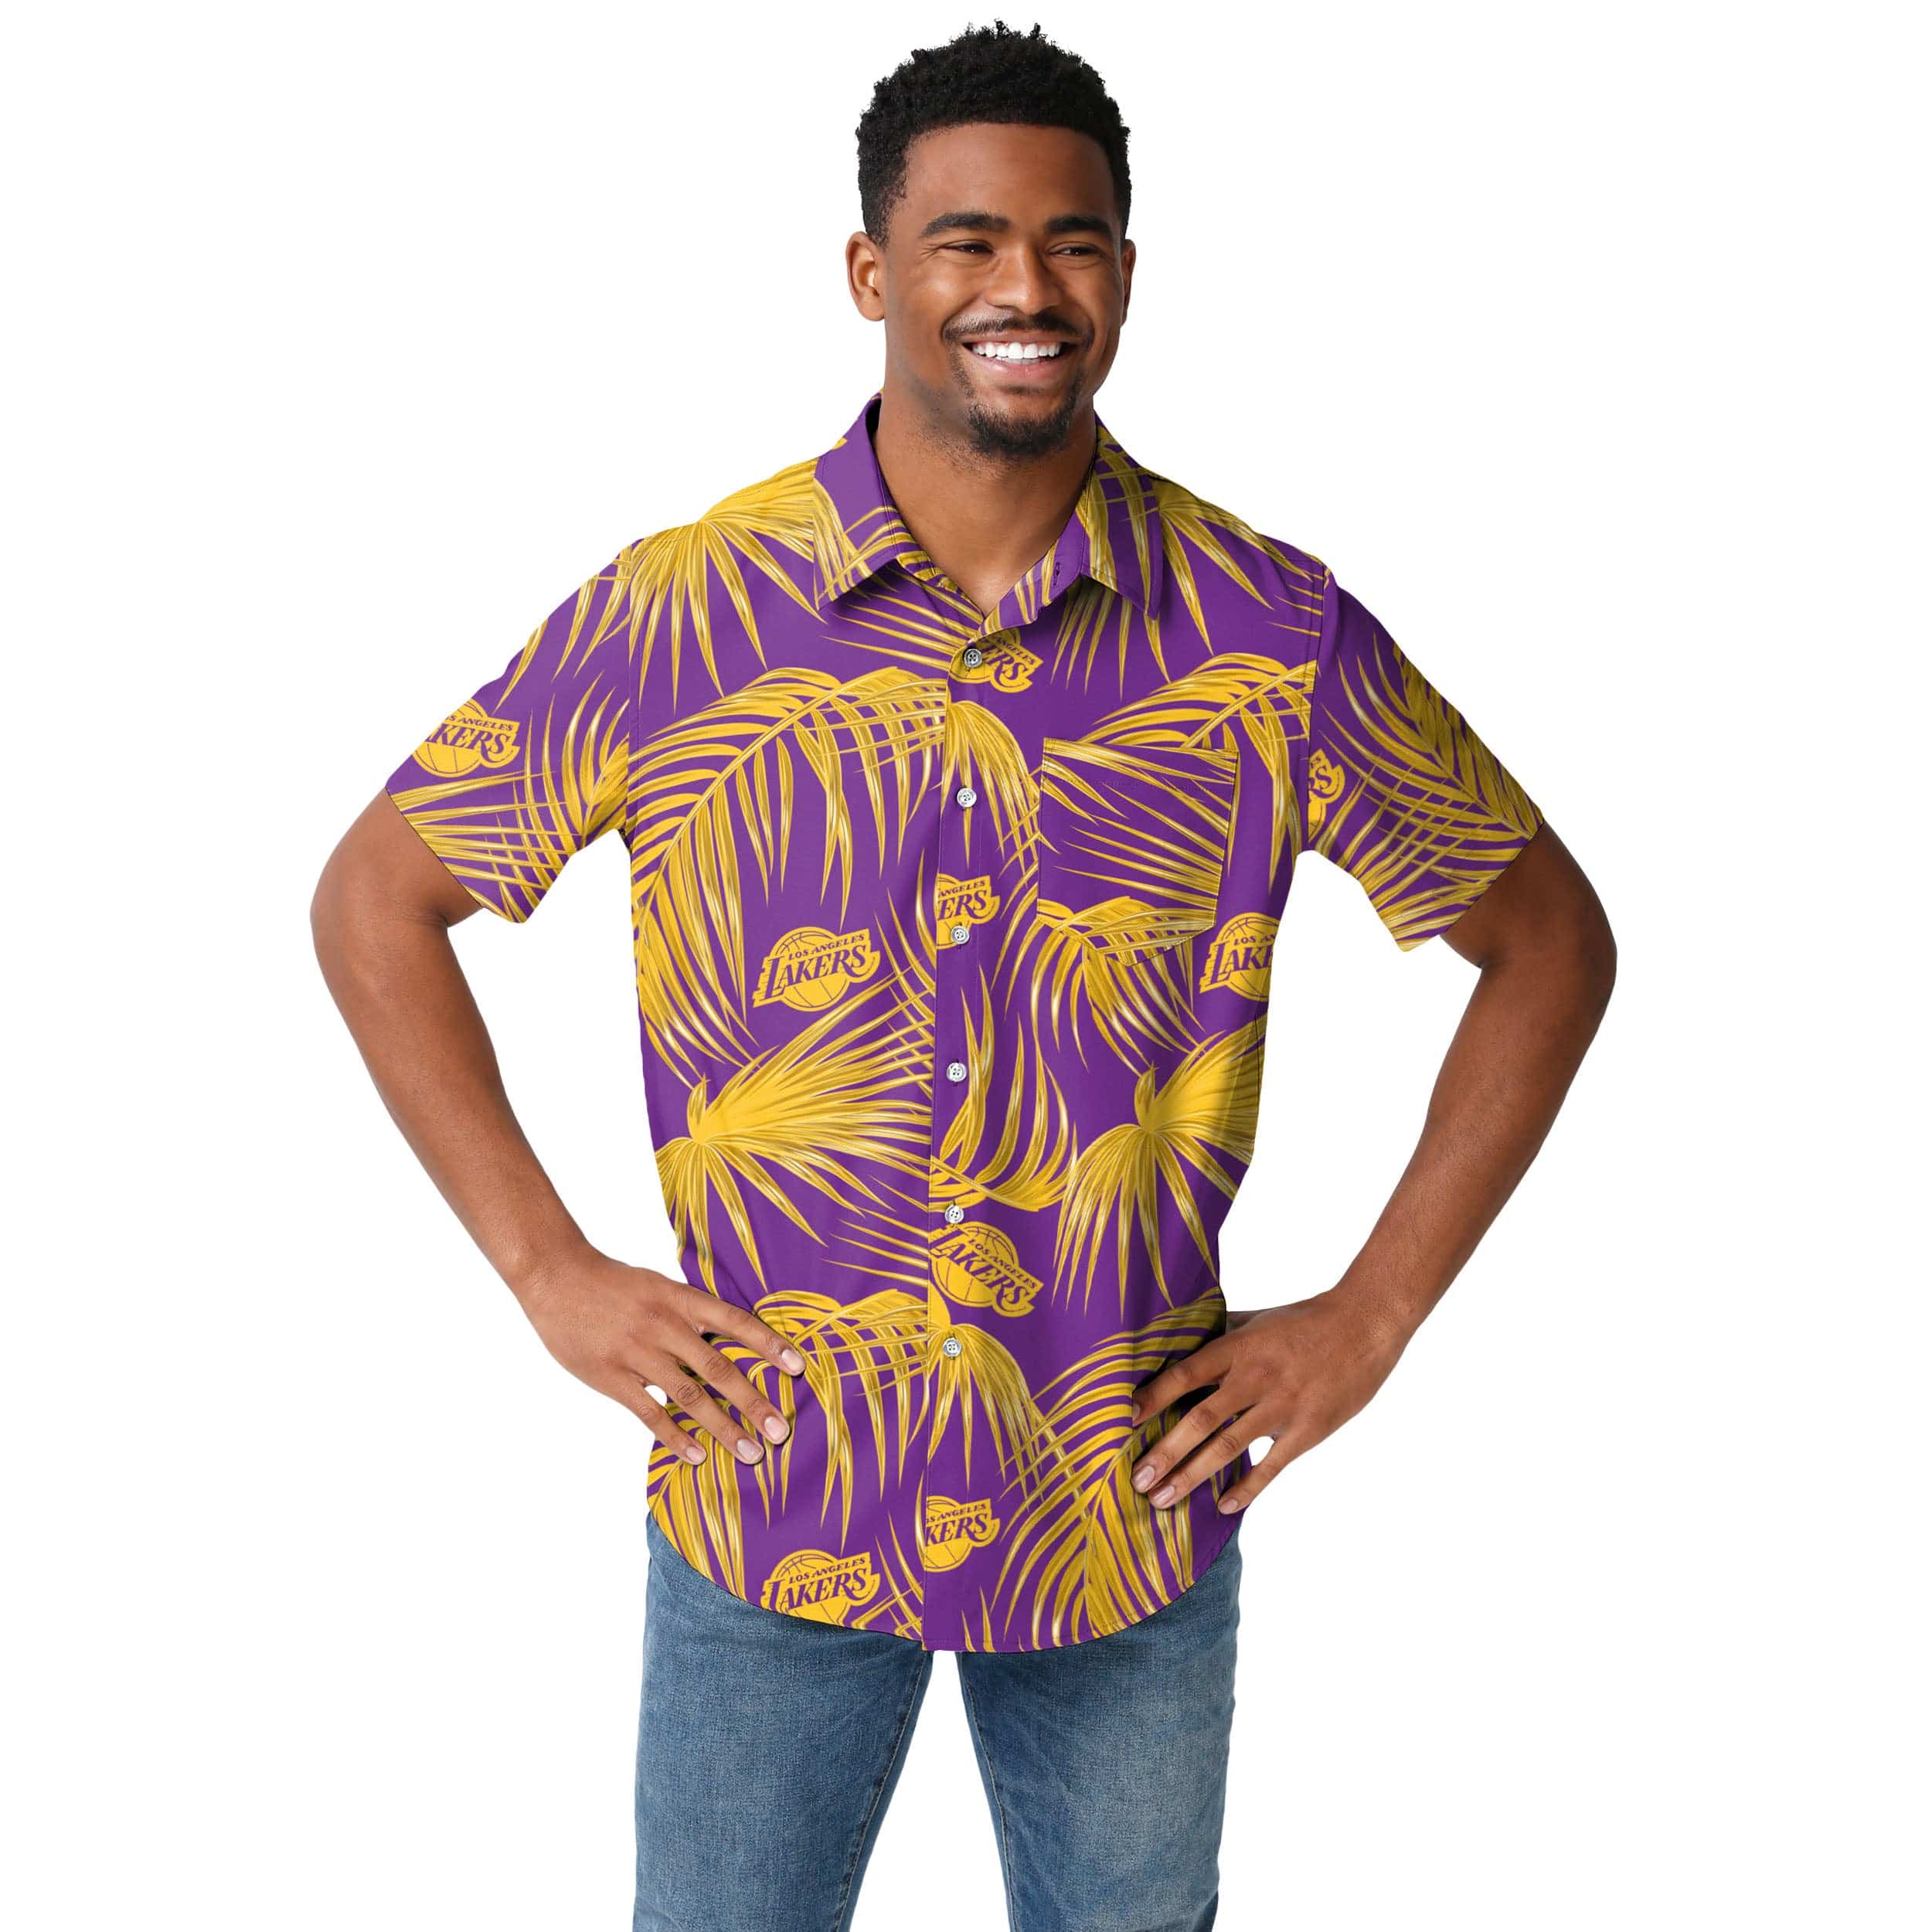 la rams hawaiian shirt